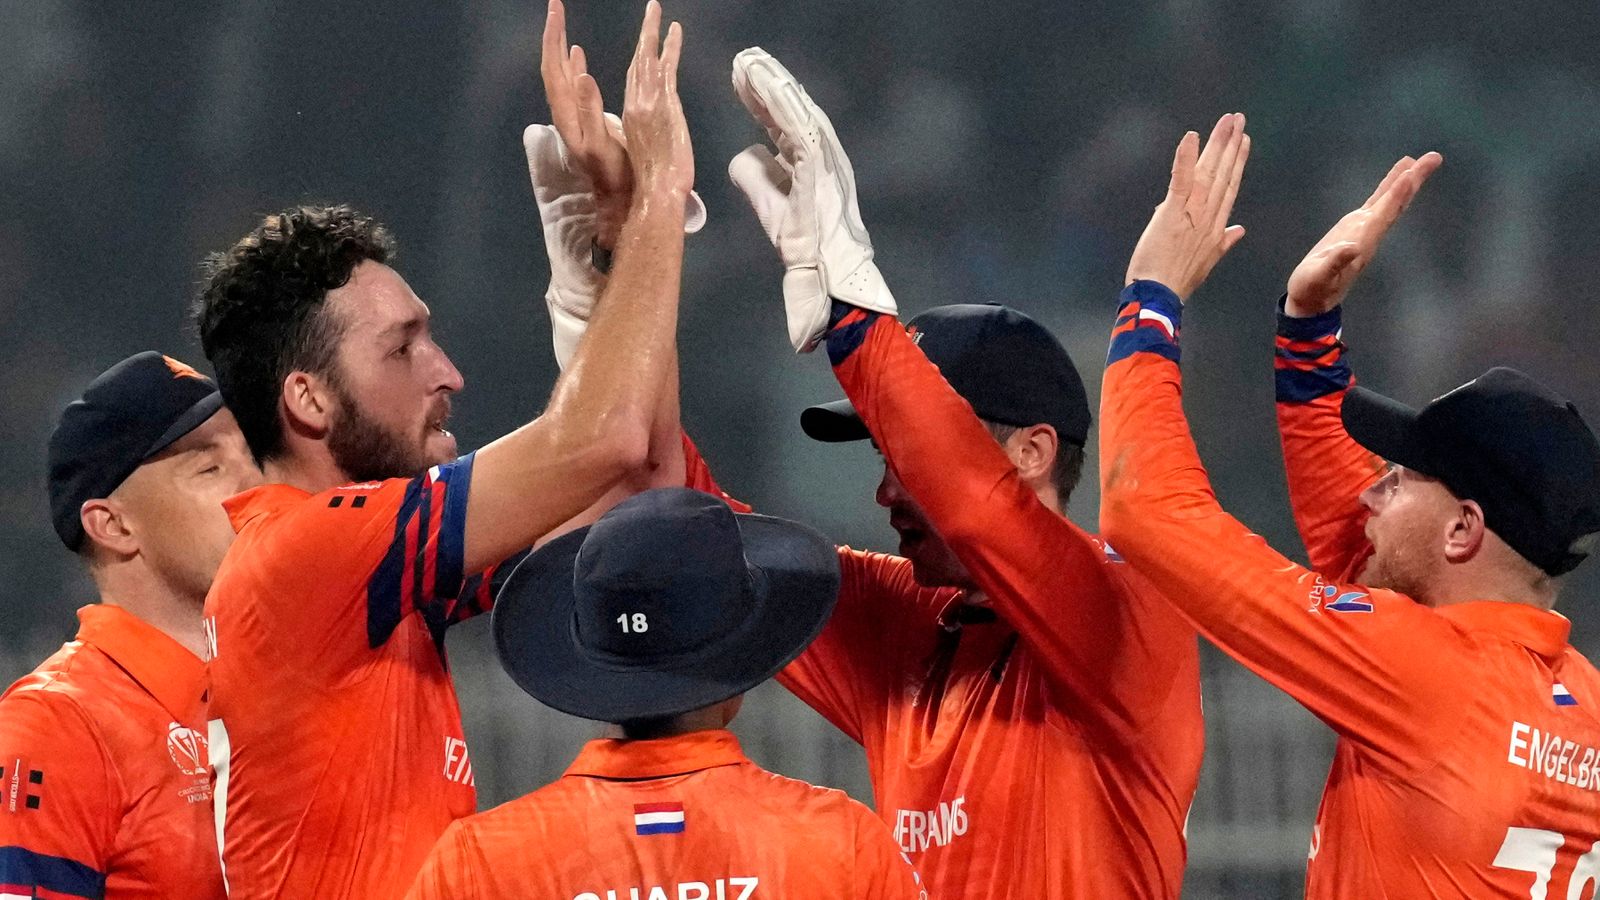 Wereldkampioenschap cricket: Engeland staat onderaan het klassement na de schokkende overwinning van Nederland op Bangladesh |  Cricketnieuws